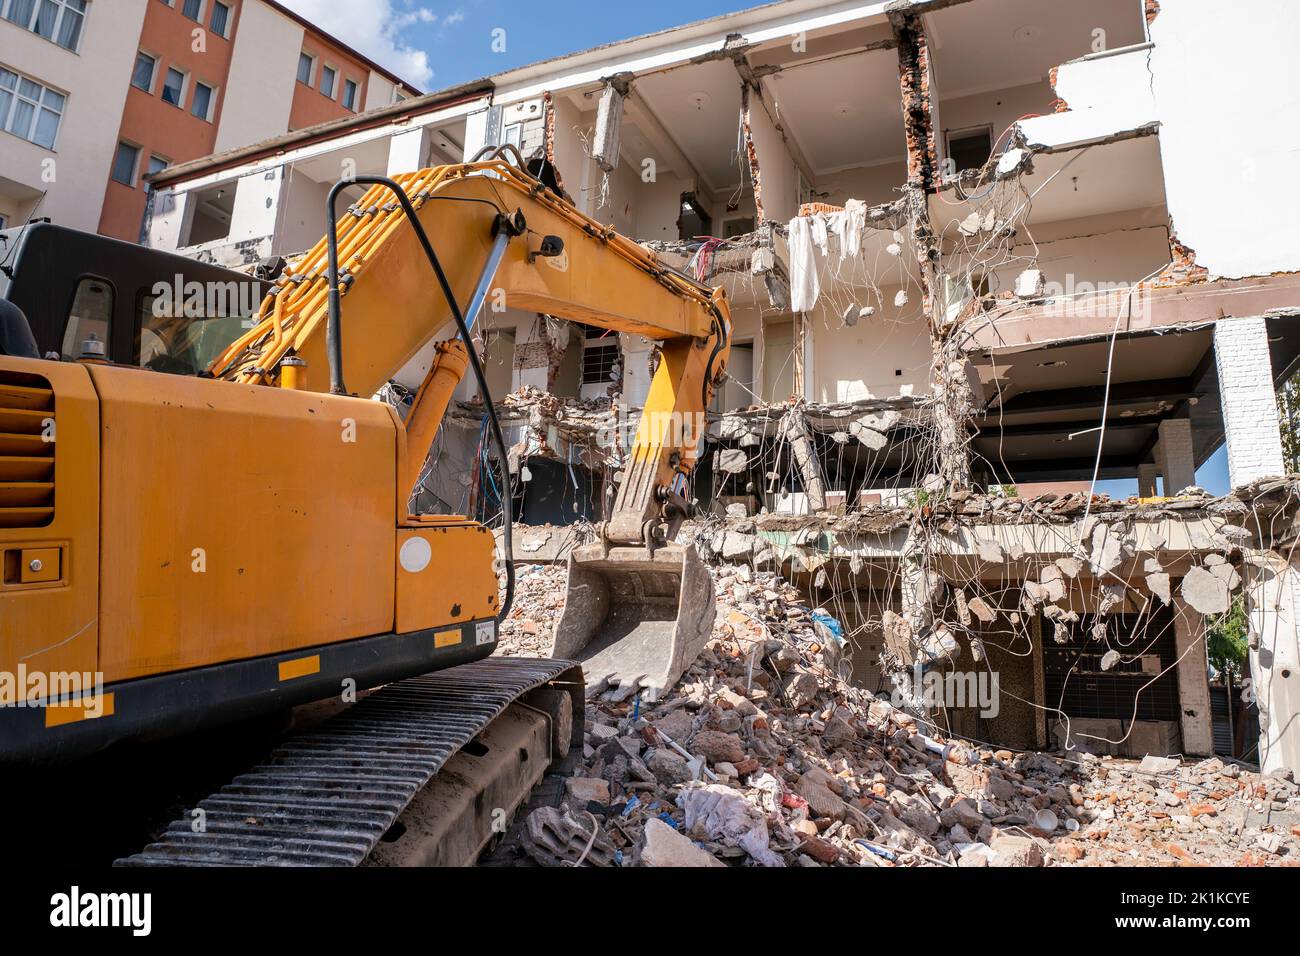 Als schwere industrielle Arbeitsmaschine zerstört der Bagger ein verlassene altes Gebäude. Hochwertige Fotos Stockfoto